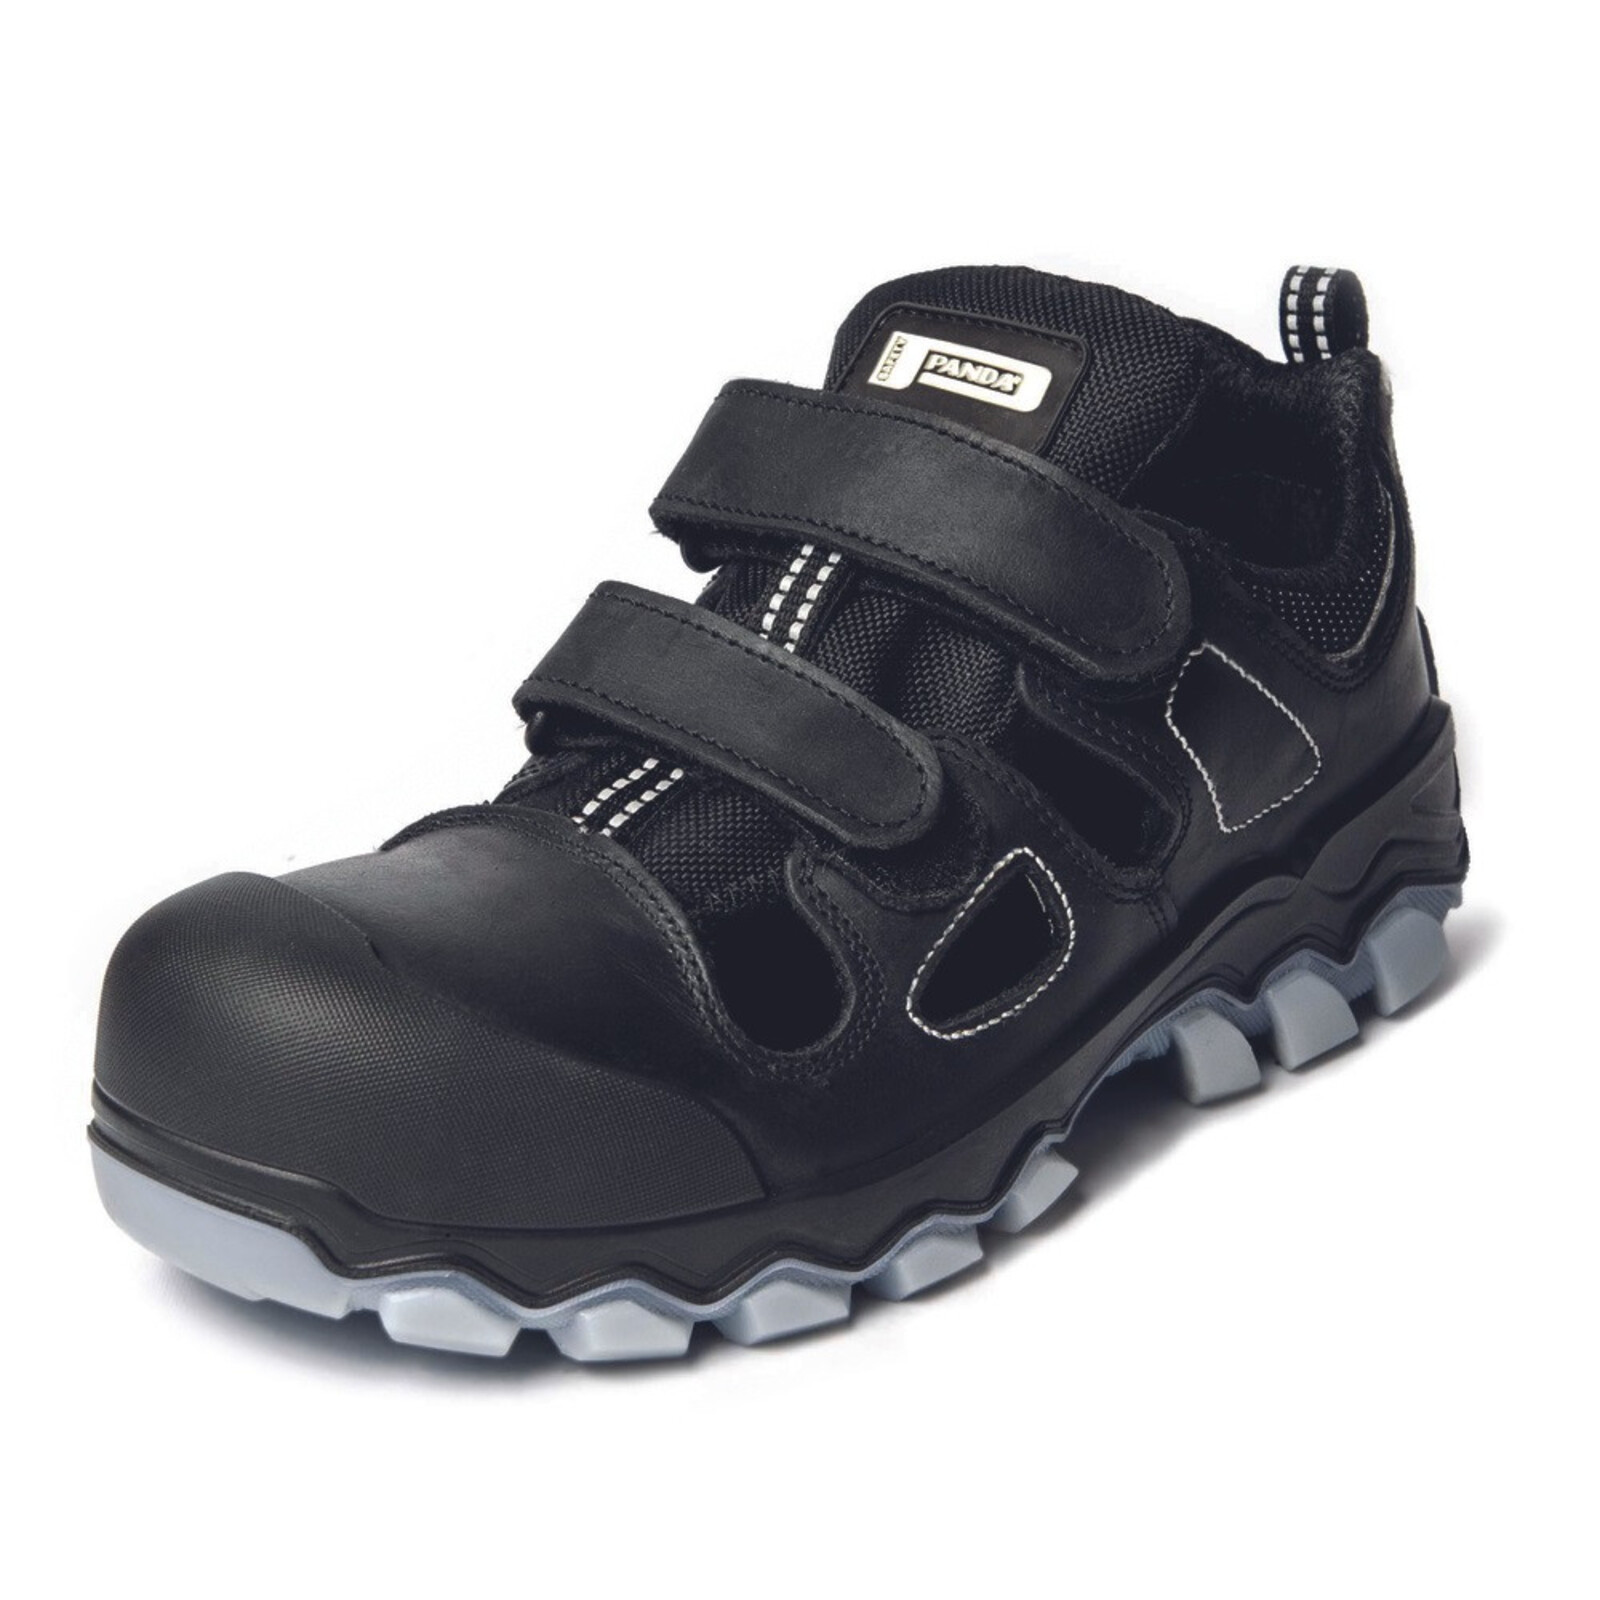 Bezpečnostné sandále Panda Techo No. Two MF S1P SRC - veľkosť: 44, farba: čierna/sivá